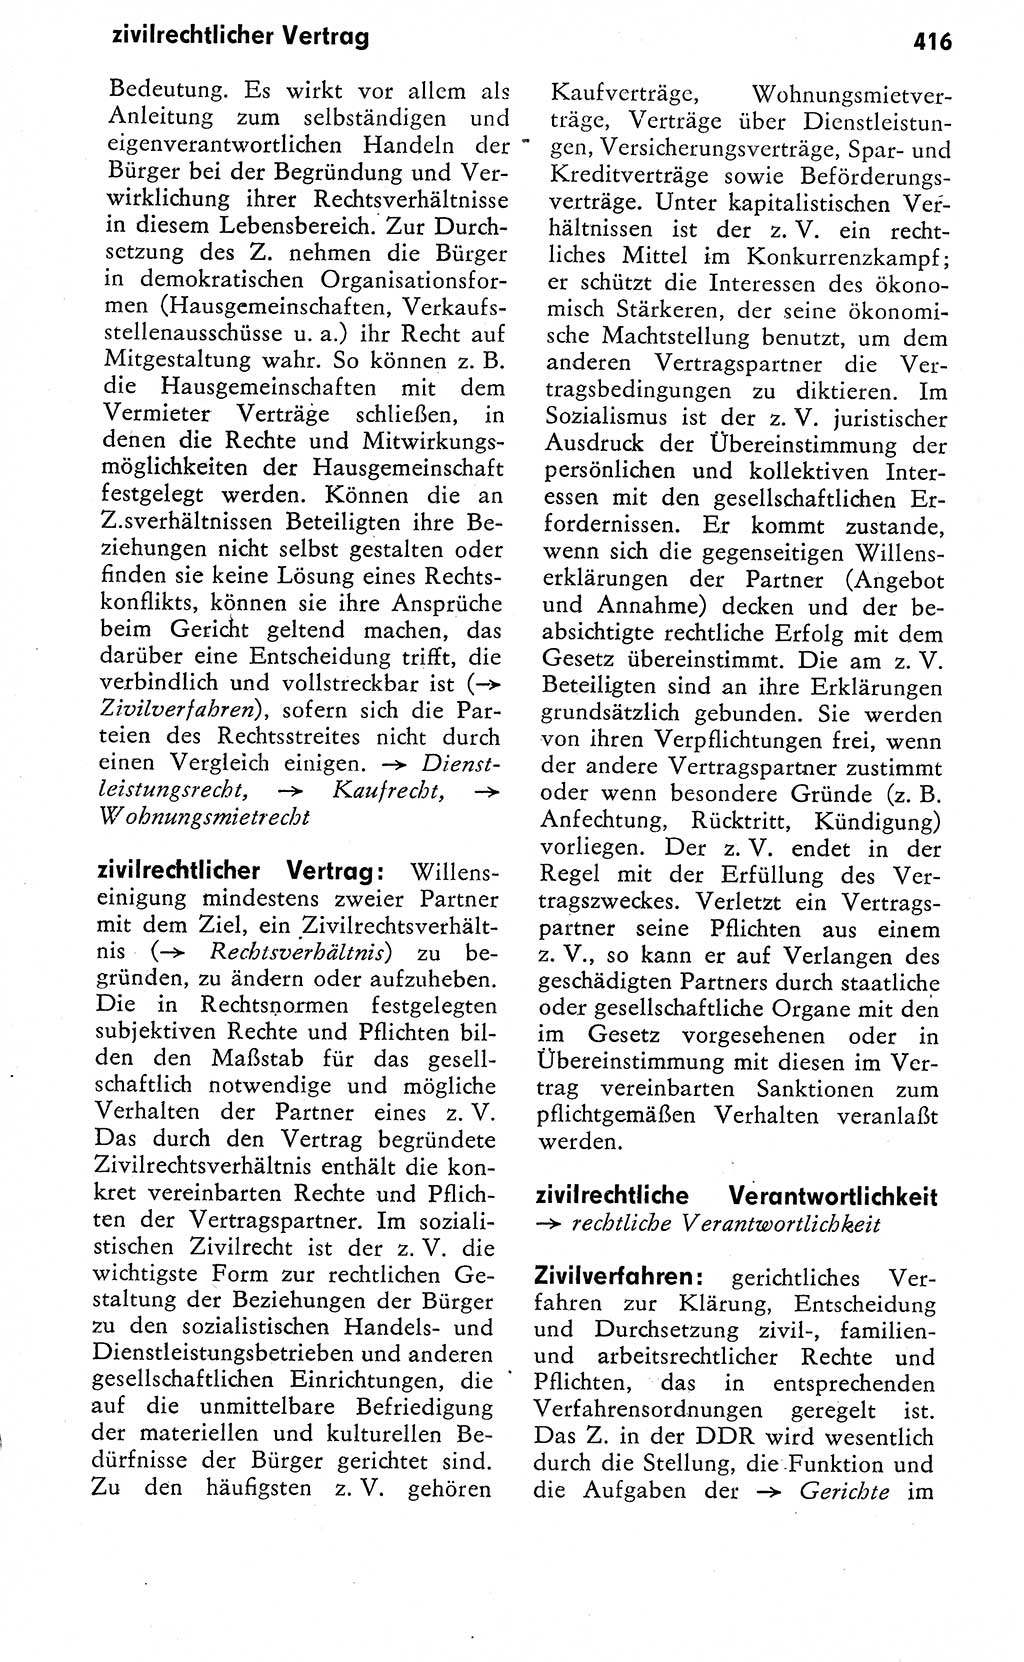 Wörterbuch zum sozialistischen Staat [Deutsche Demokratische Republik (DDR)] 1974, Seite 416 (Wb. soz. St. DDR 1974, S. 416)